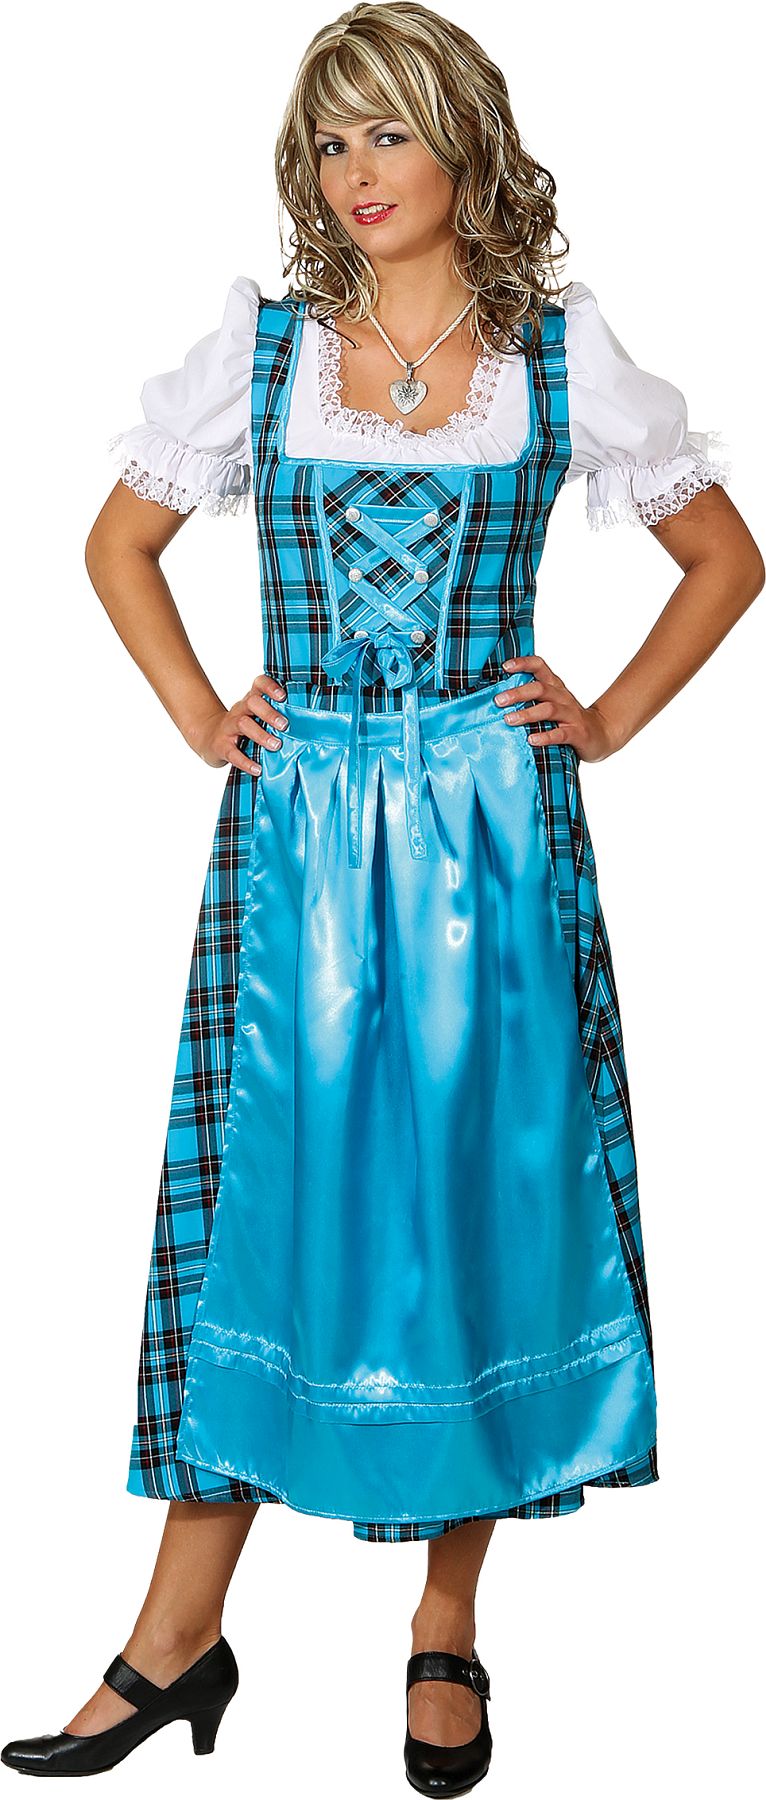 Costume bavaroise ''Dirndl'' longue, turquoise à carreaux